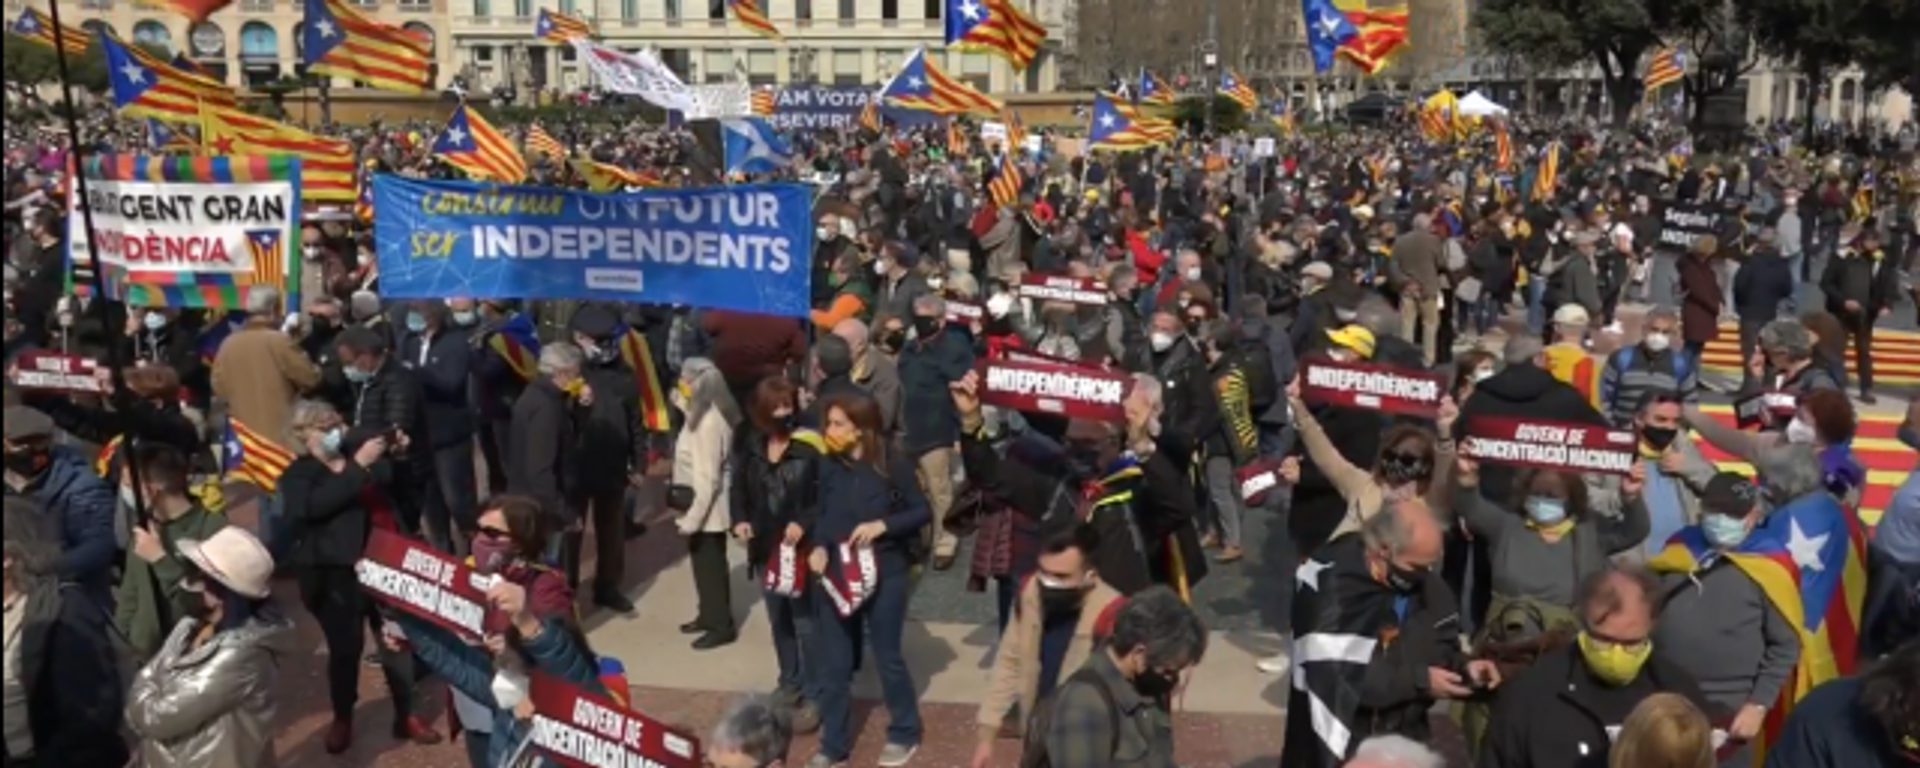 Miles de catalanes piden a los partidos independentistas formar un gobierno de unidad - Sputnik Mundo, 1920, 28.02.2021